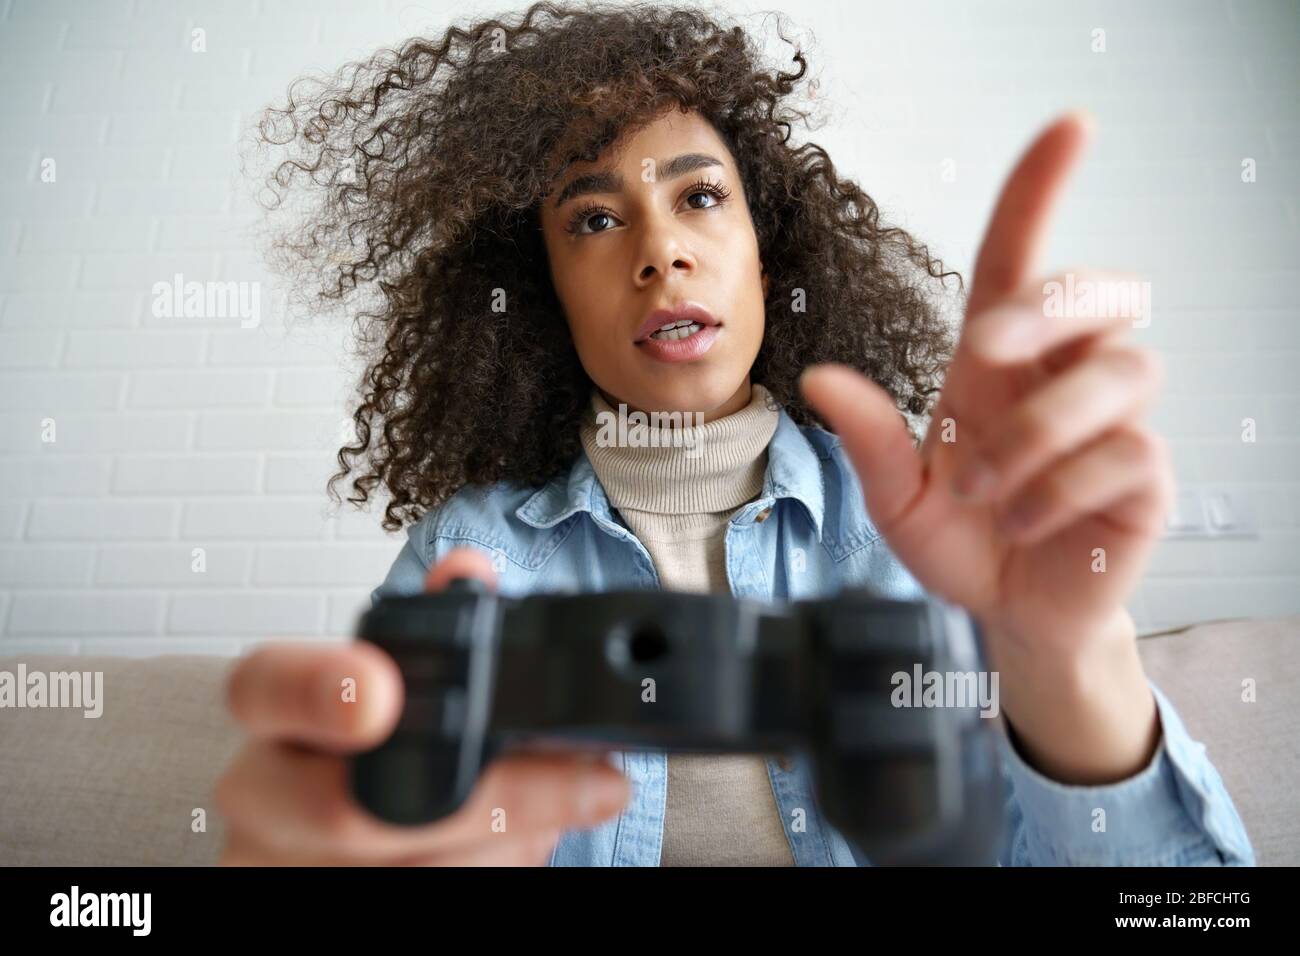 Junge afrikanische Mädchen Gamer halten Joystick Controller spielen Videospiel. Stockfoto